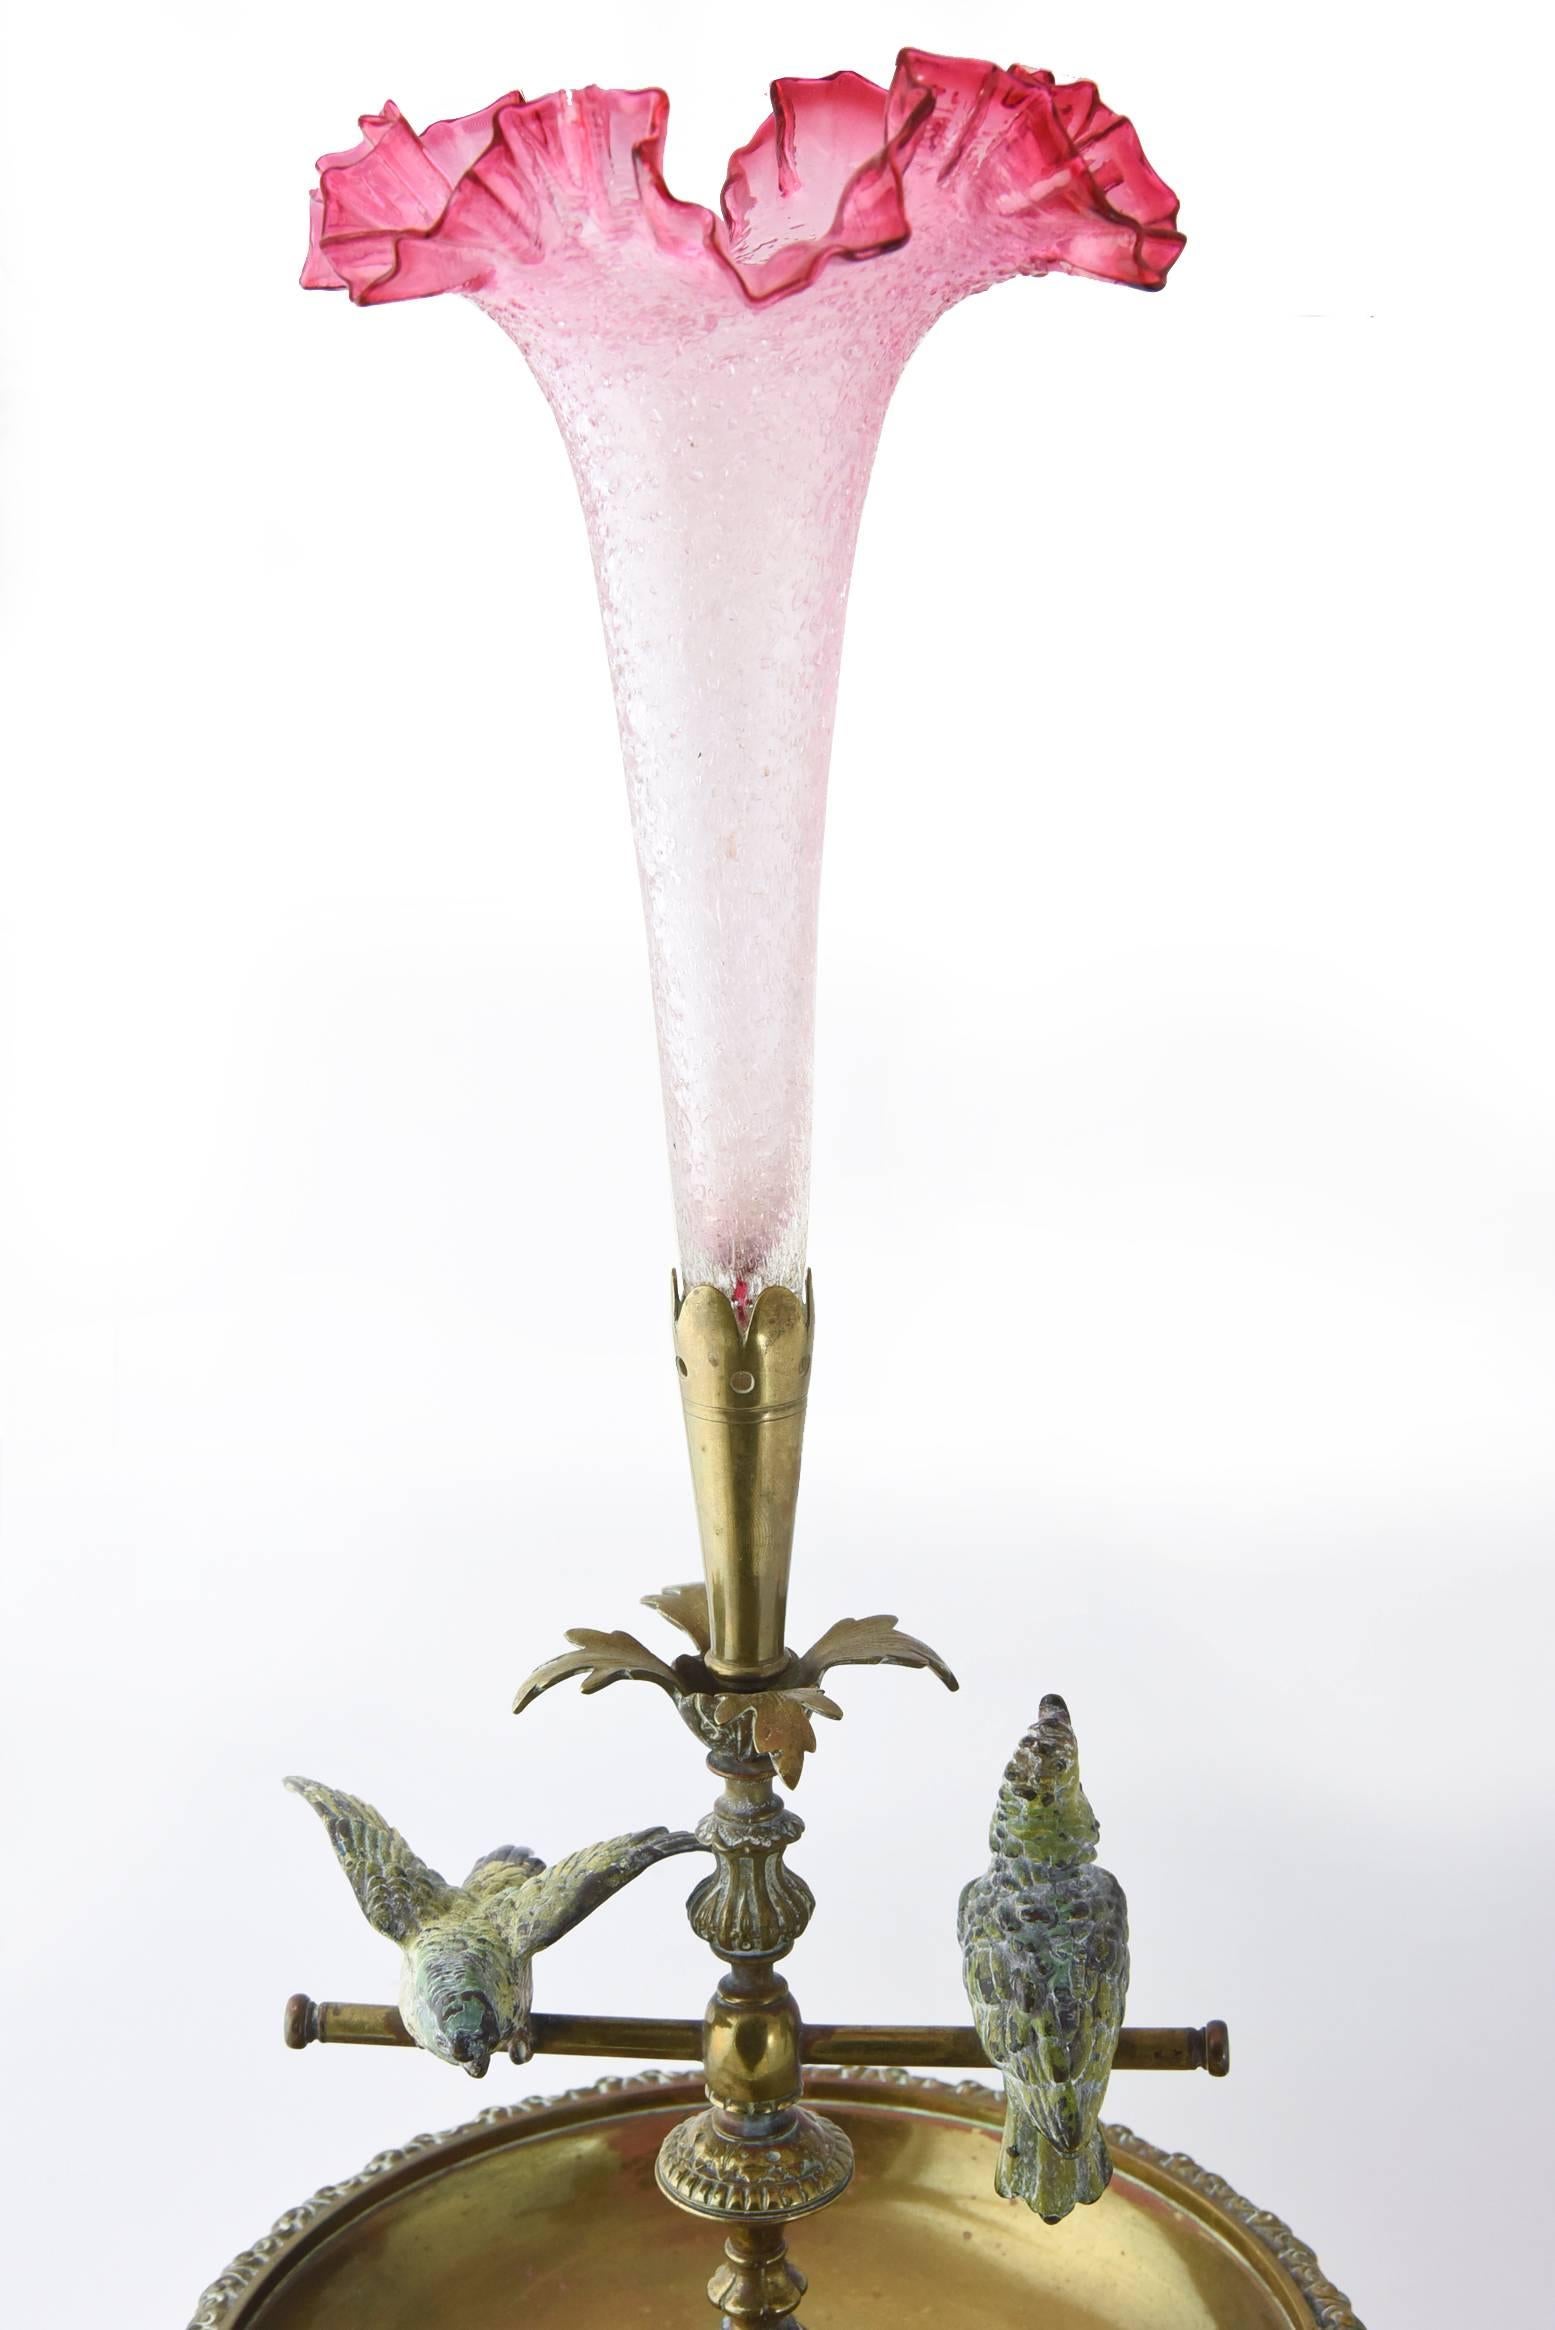 Pièce centrale d'Épergne du début du 20e siècle avec deux cockatiels peints à froid en bronze de Vienne sur des balançoires à bascule et un beau vase tulipe en verre d'art rose craquelé. La pièce n'est pas signée.